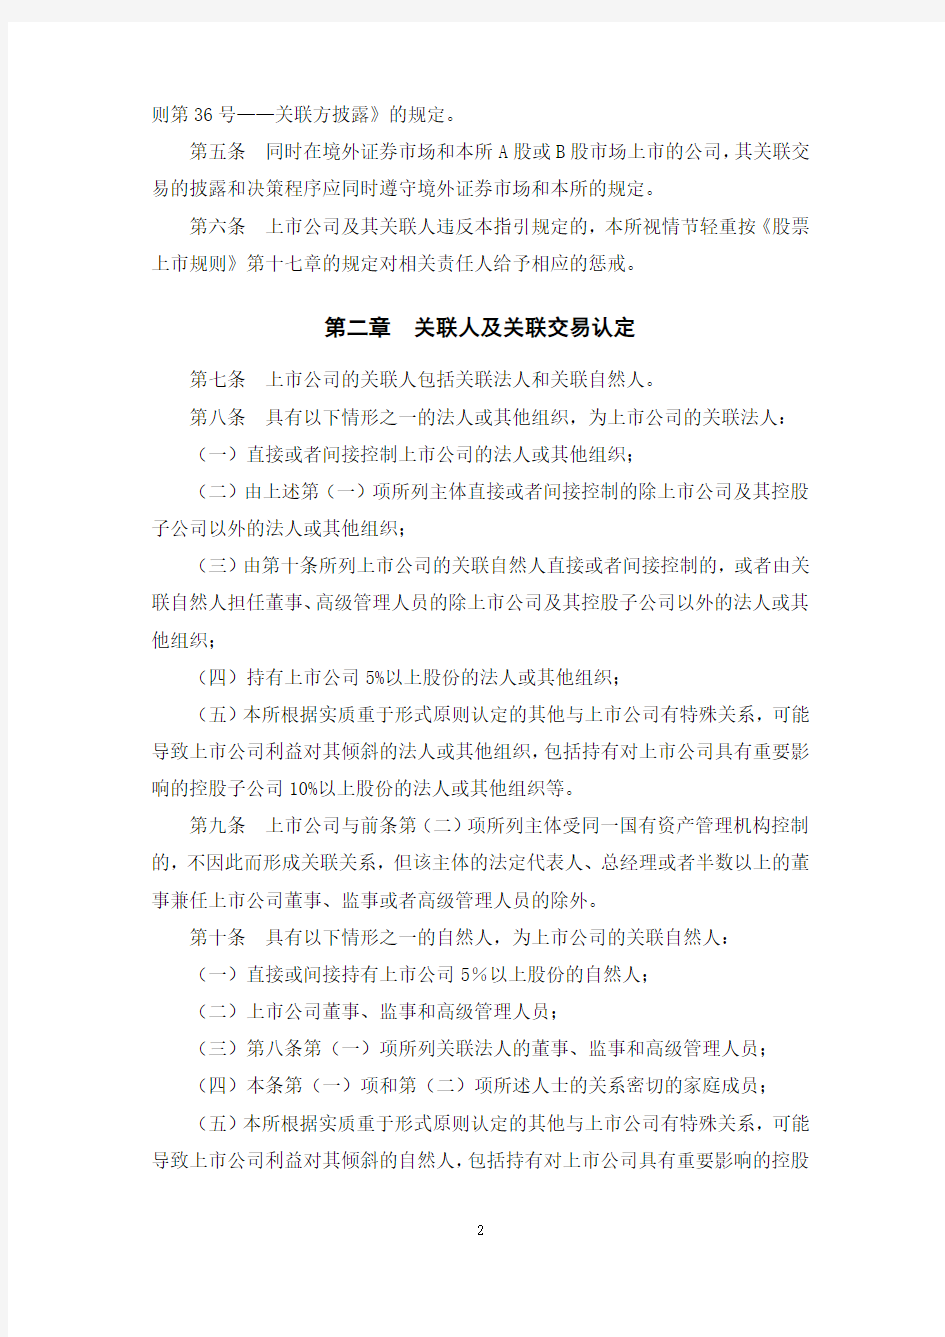 上海证券交易所上市公司关联交易实施指引201134